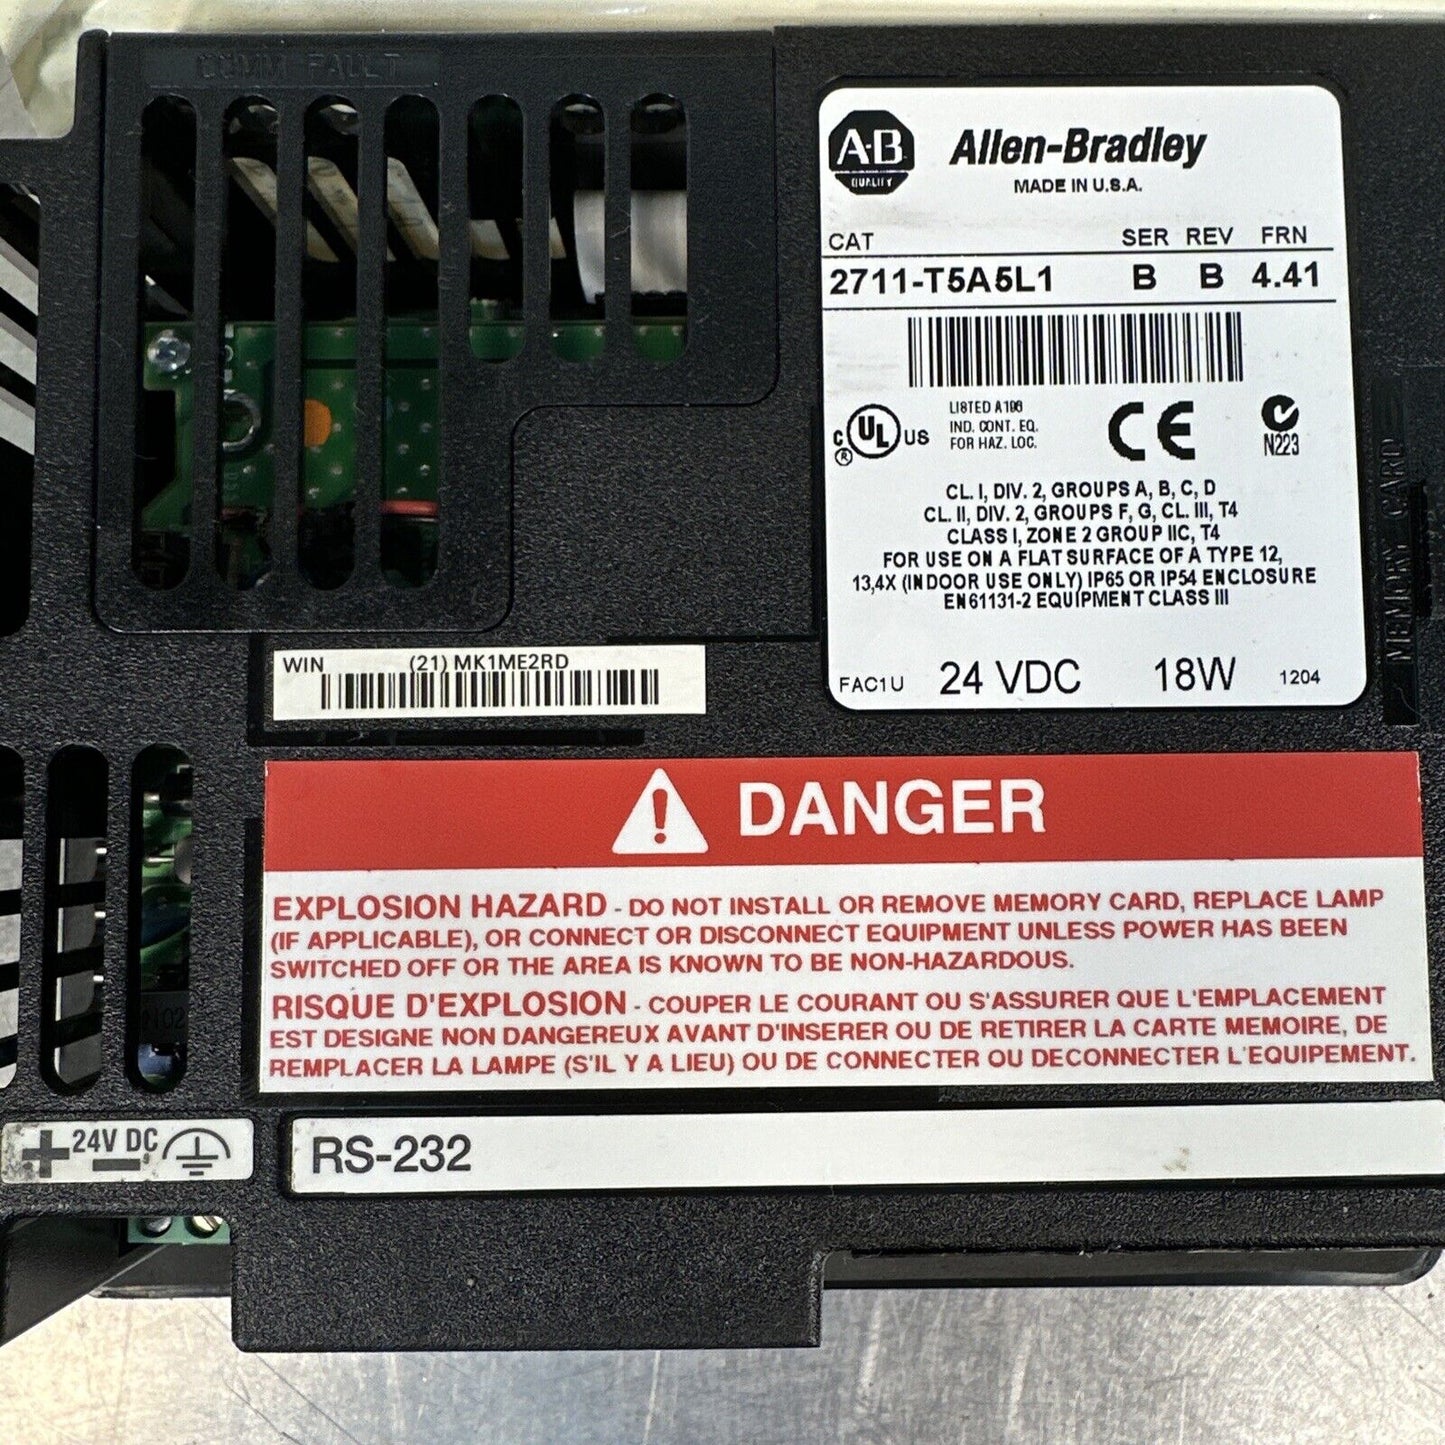 Allen-Bradley 2711-T5A5L1 touch screen SER B/REV B/FRN 4.41 (BIN-1.2.5)